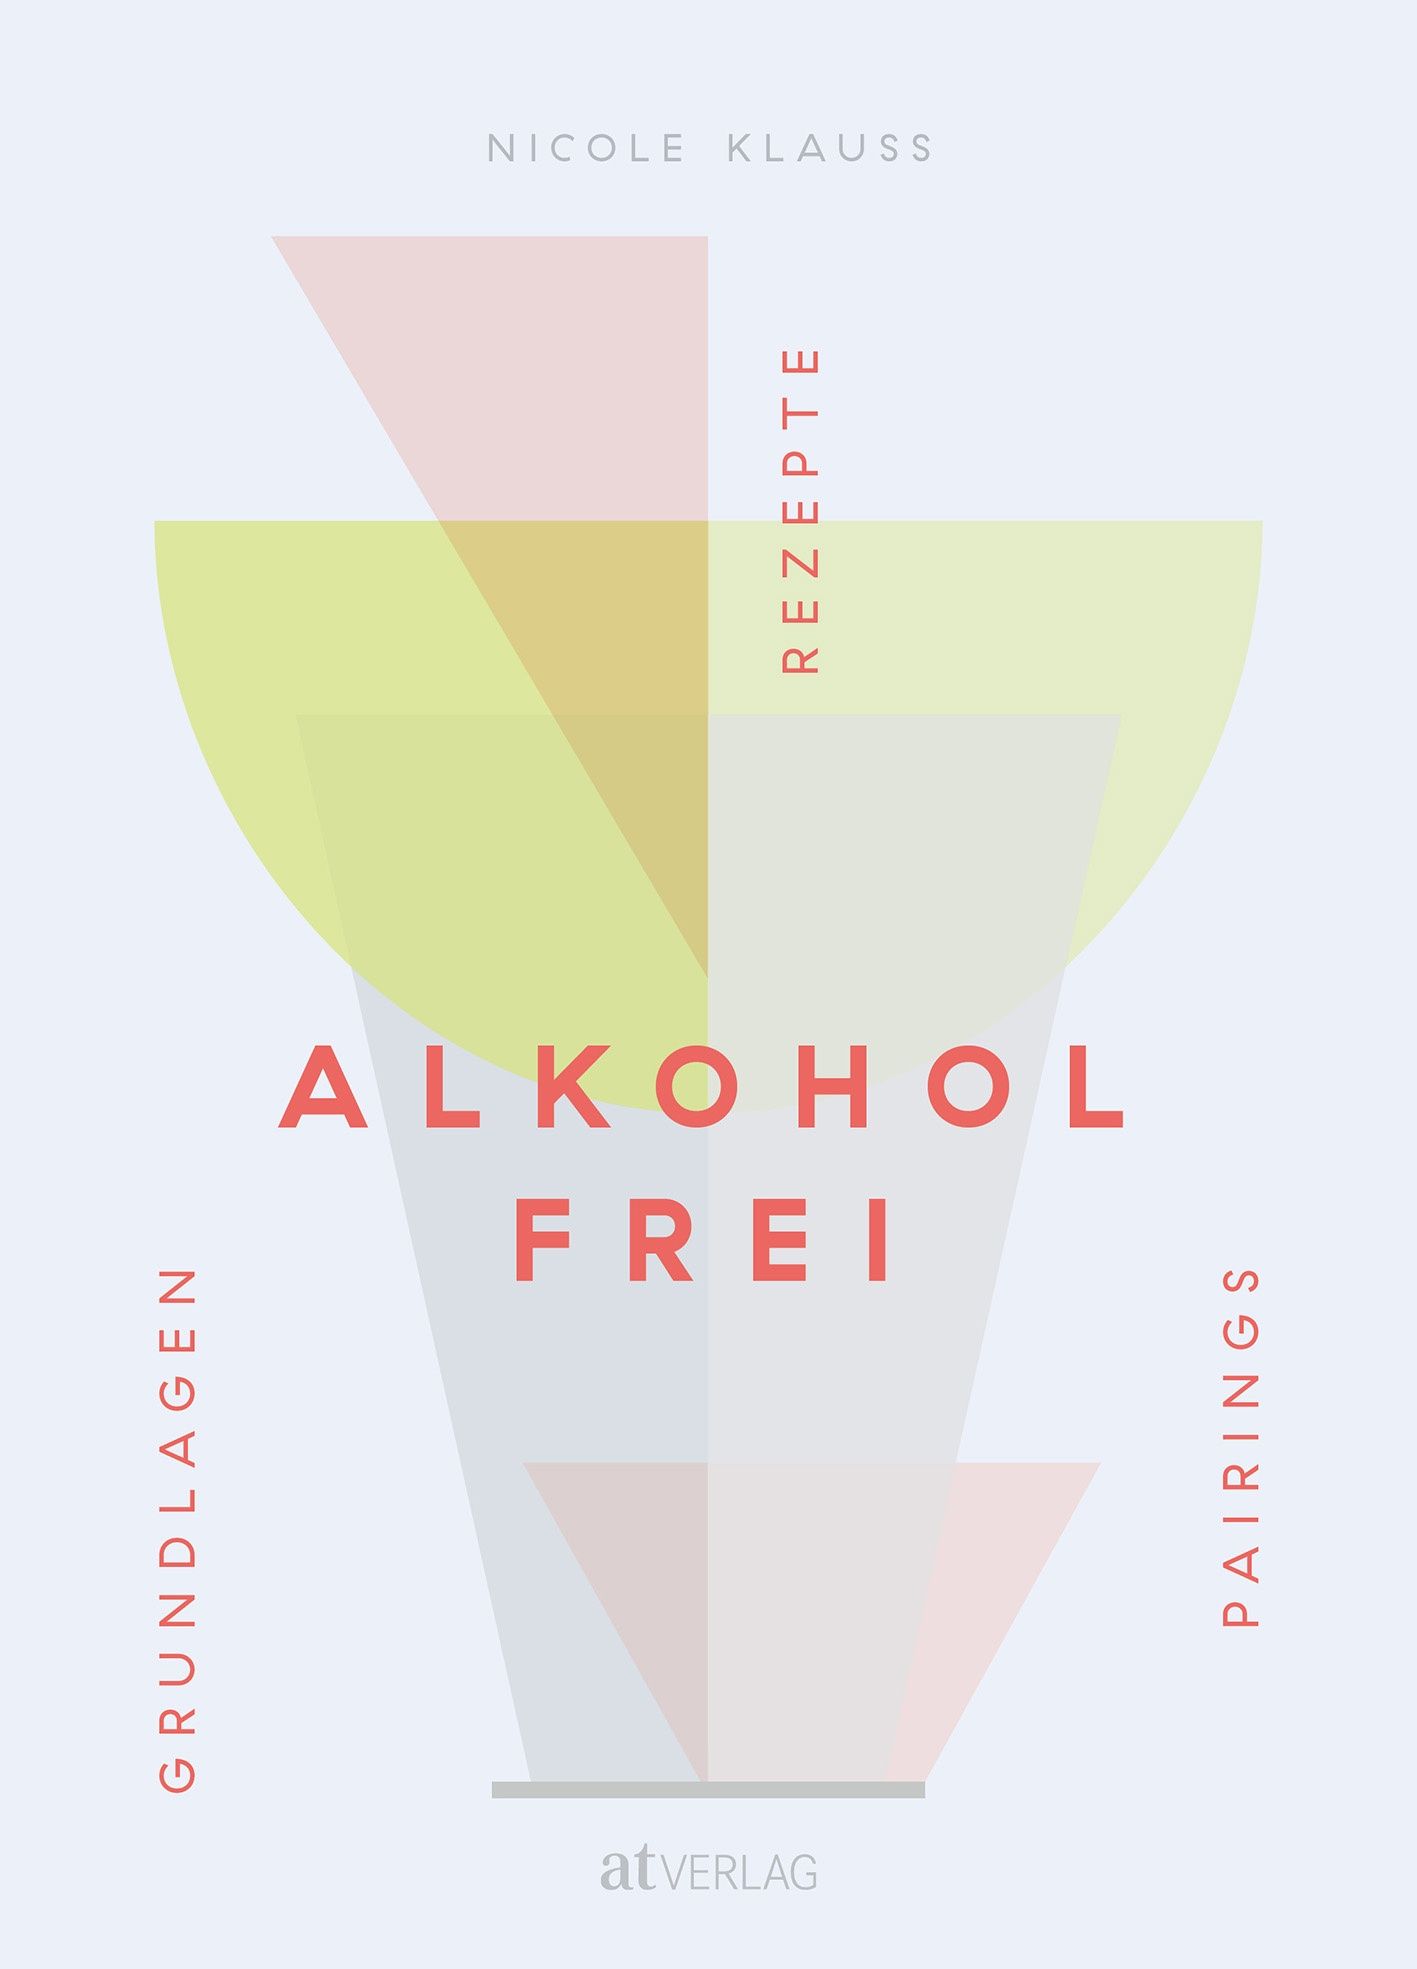 Abstrakte geometrische Figuren darauf der Buchtitel "Alkoholfrei"